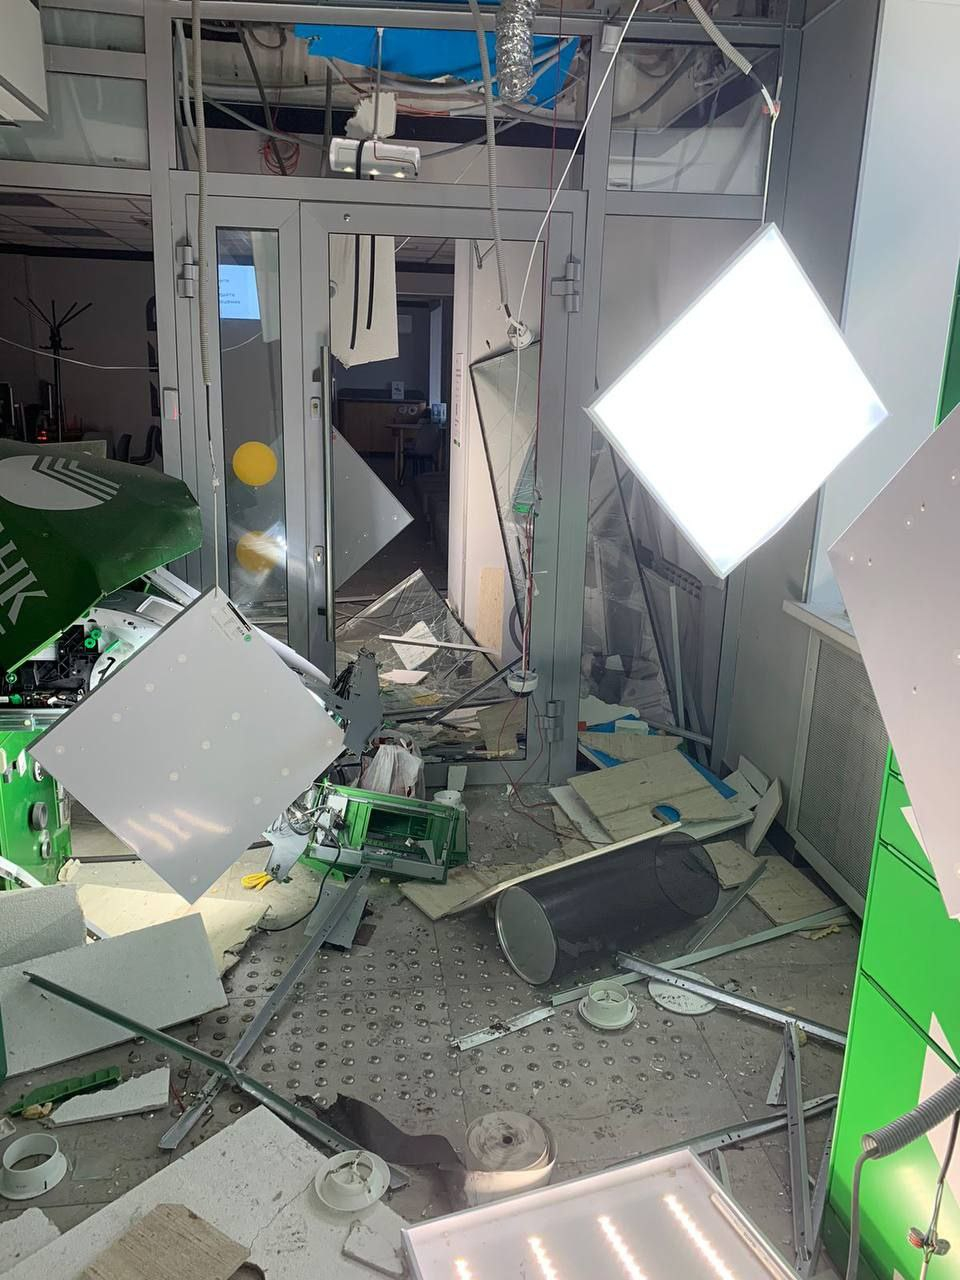 Неизвестный взорвал банкомат в многоквартирном доме в Омске при попытке похитить деньги